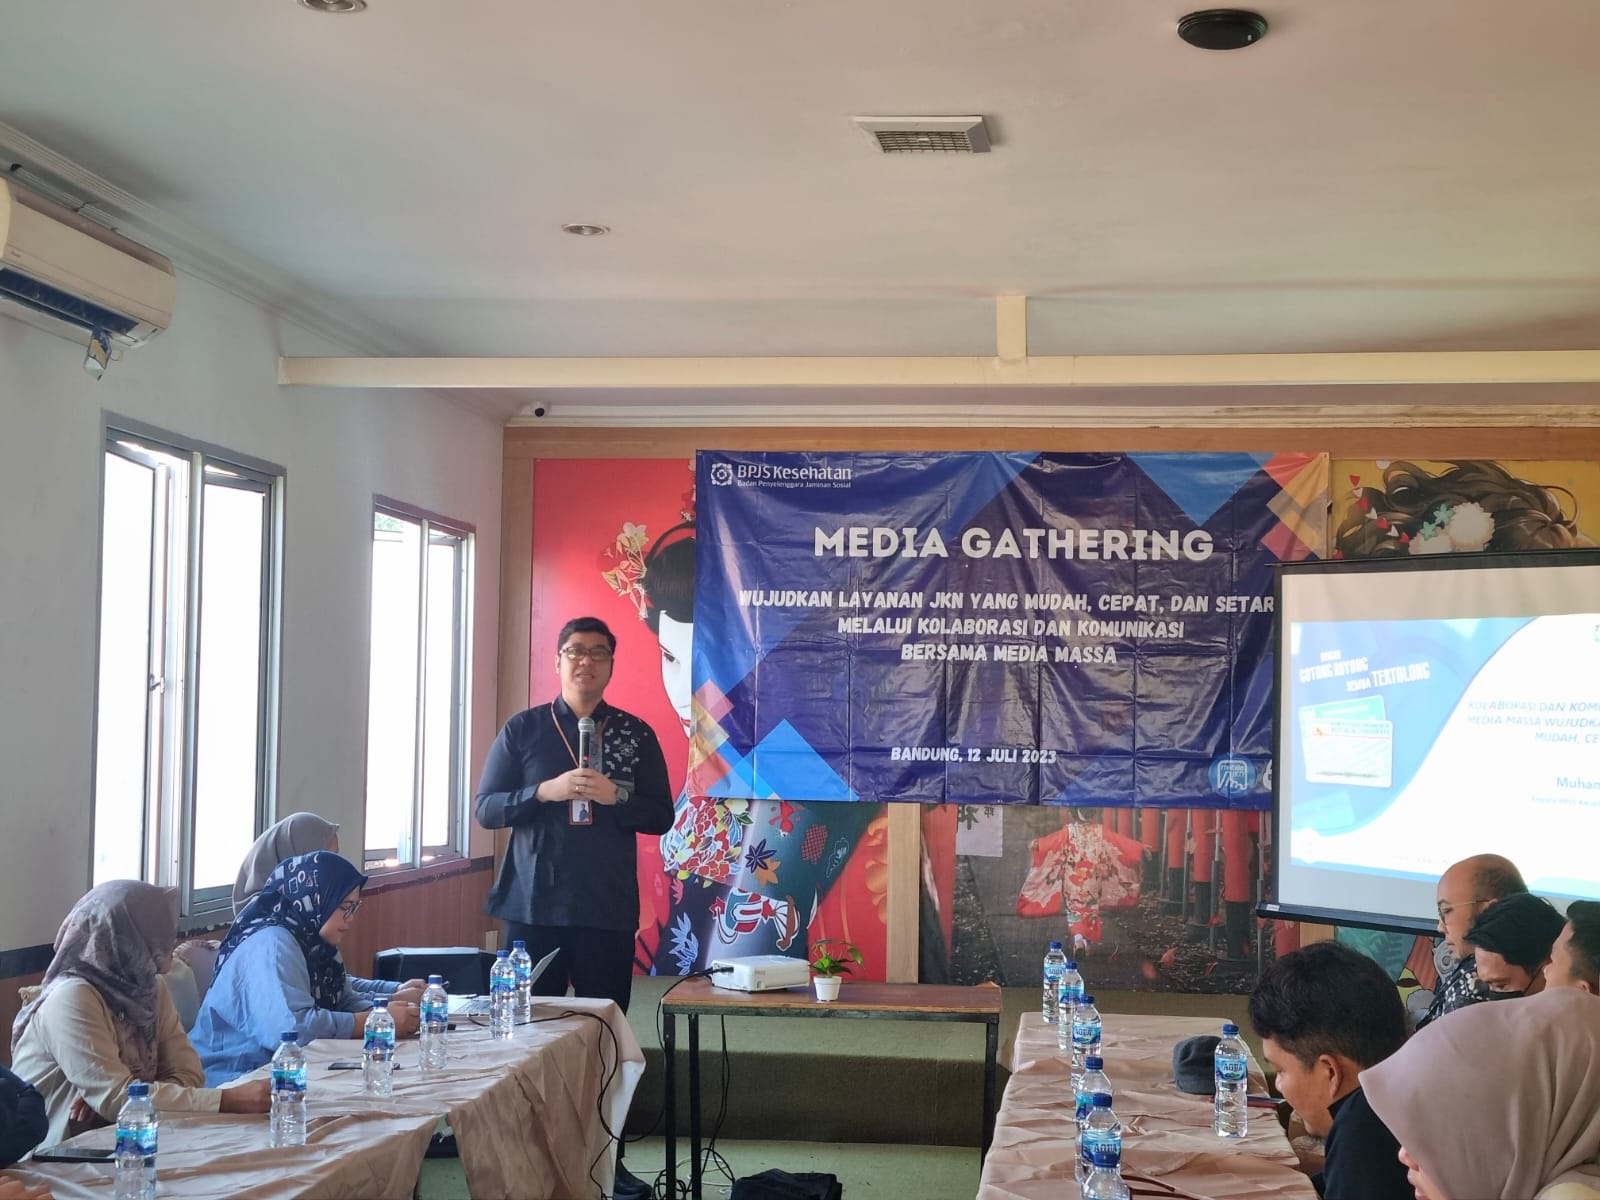 BPJS Kesehatan Bandung Media Gathering 12 7 2023 